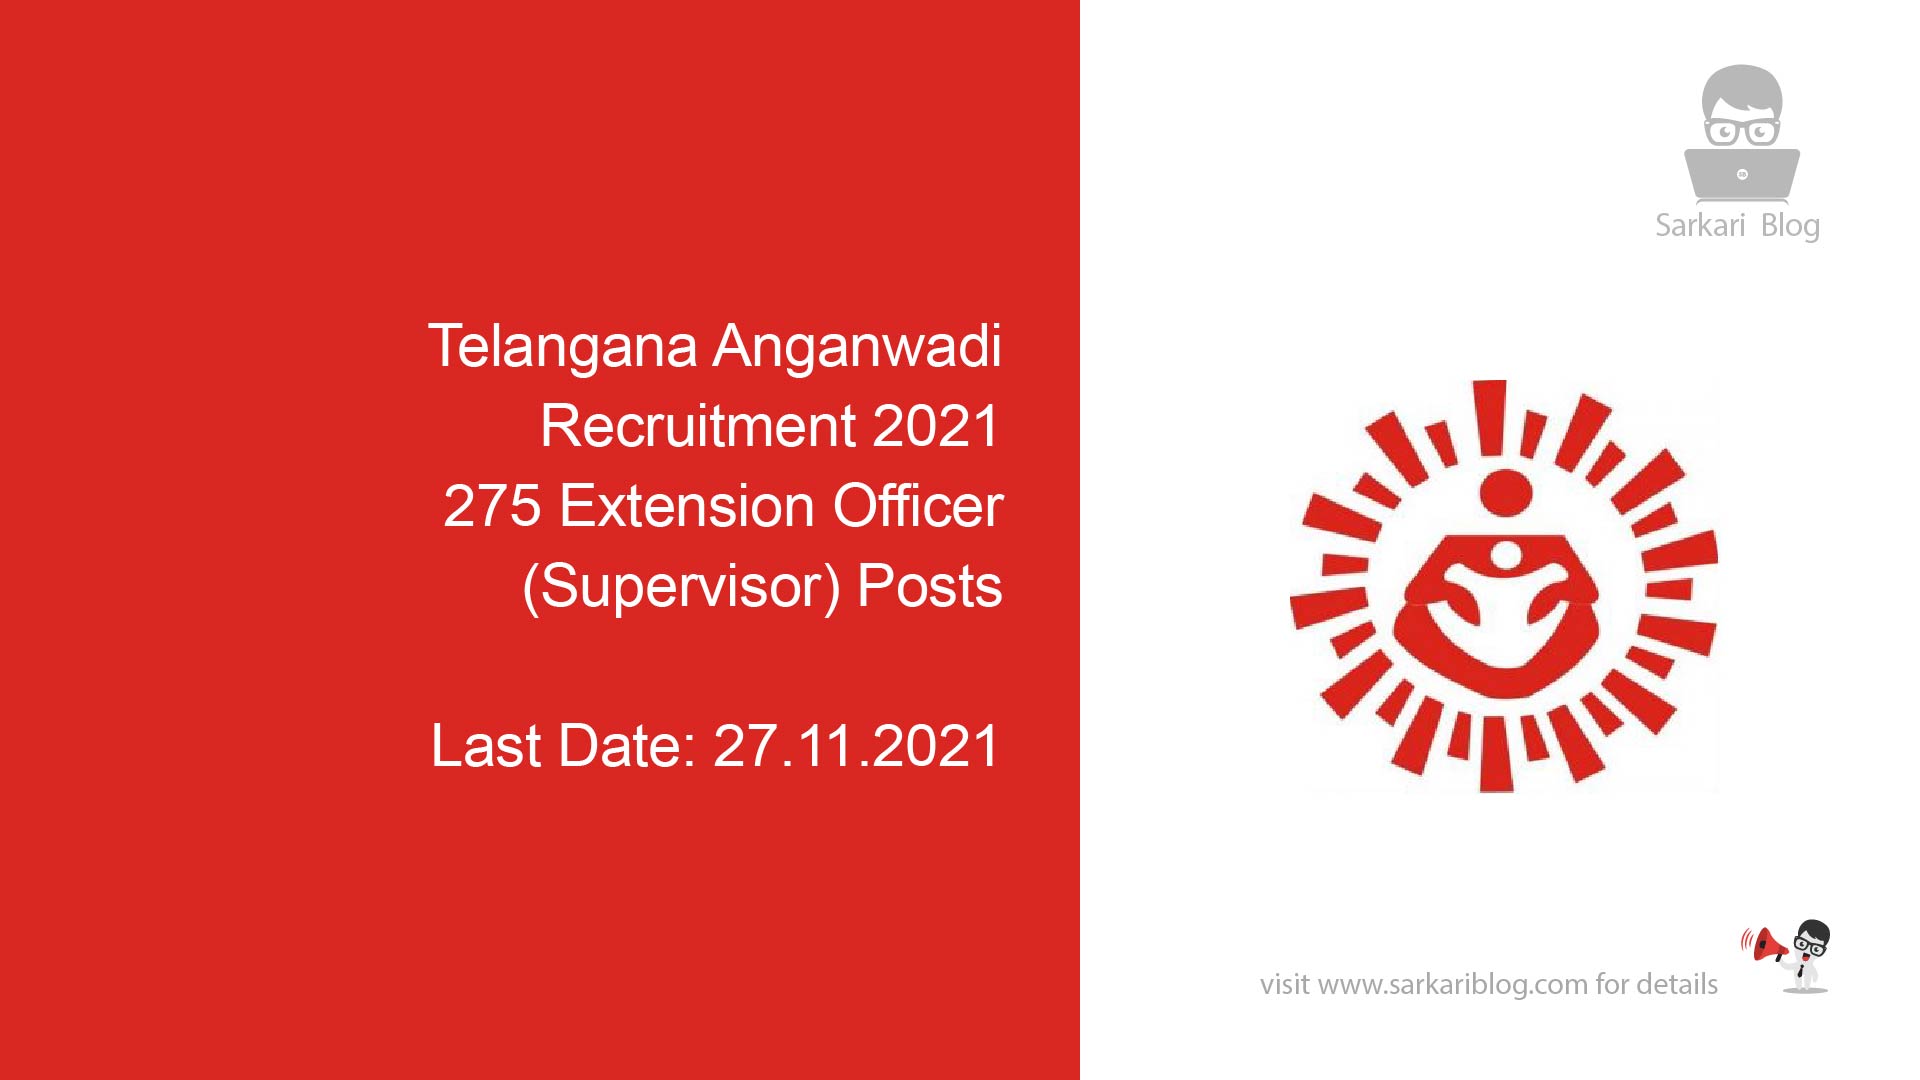 Telangana Anganwadi Recruitment 2021